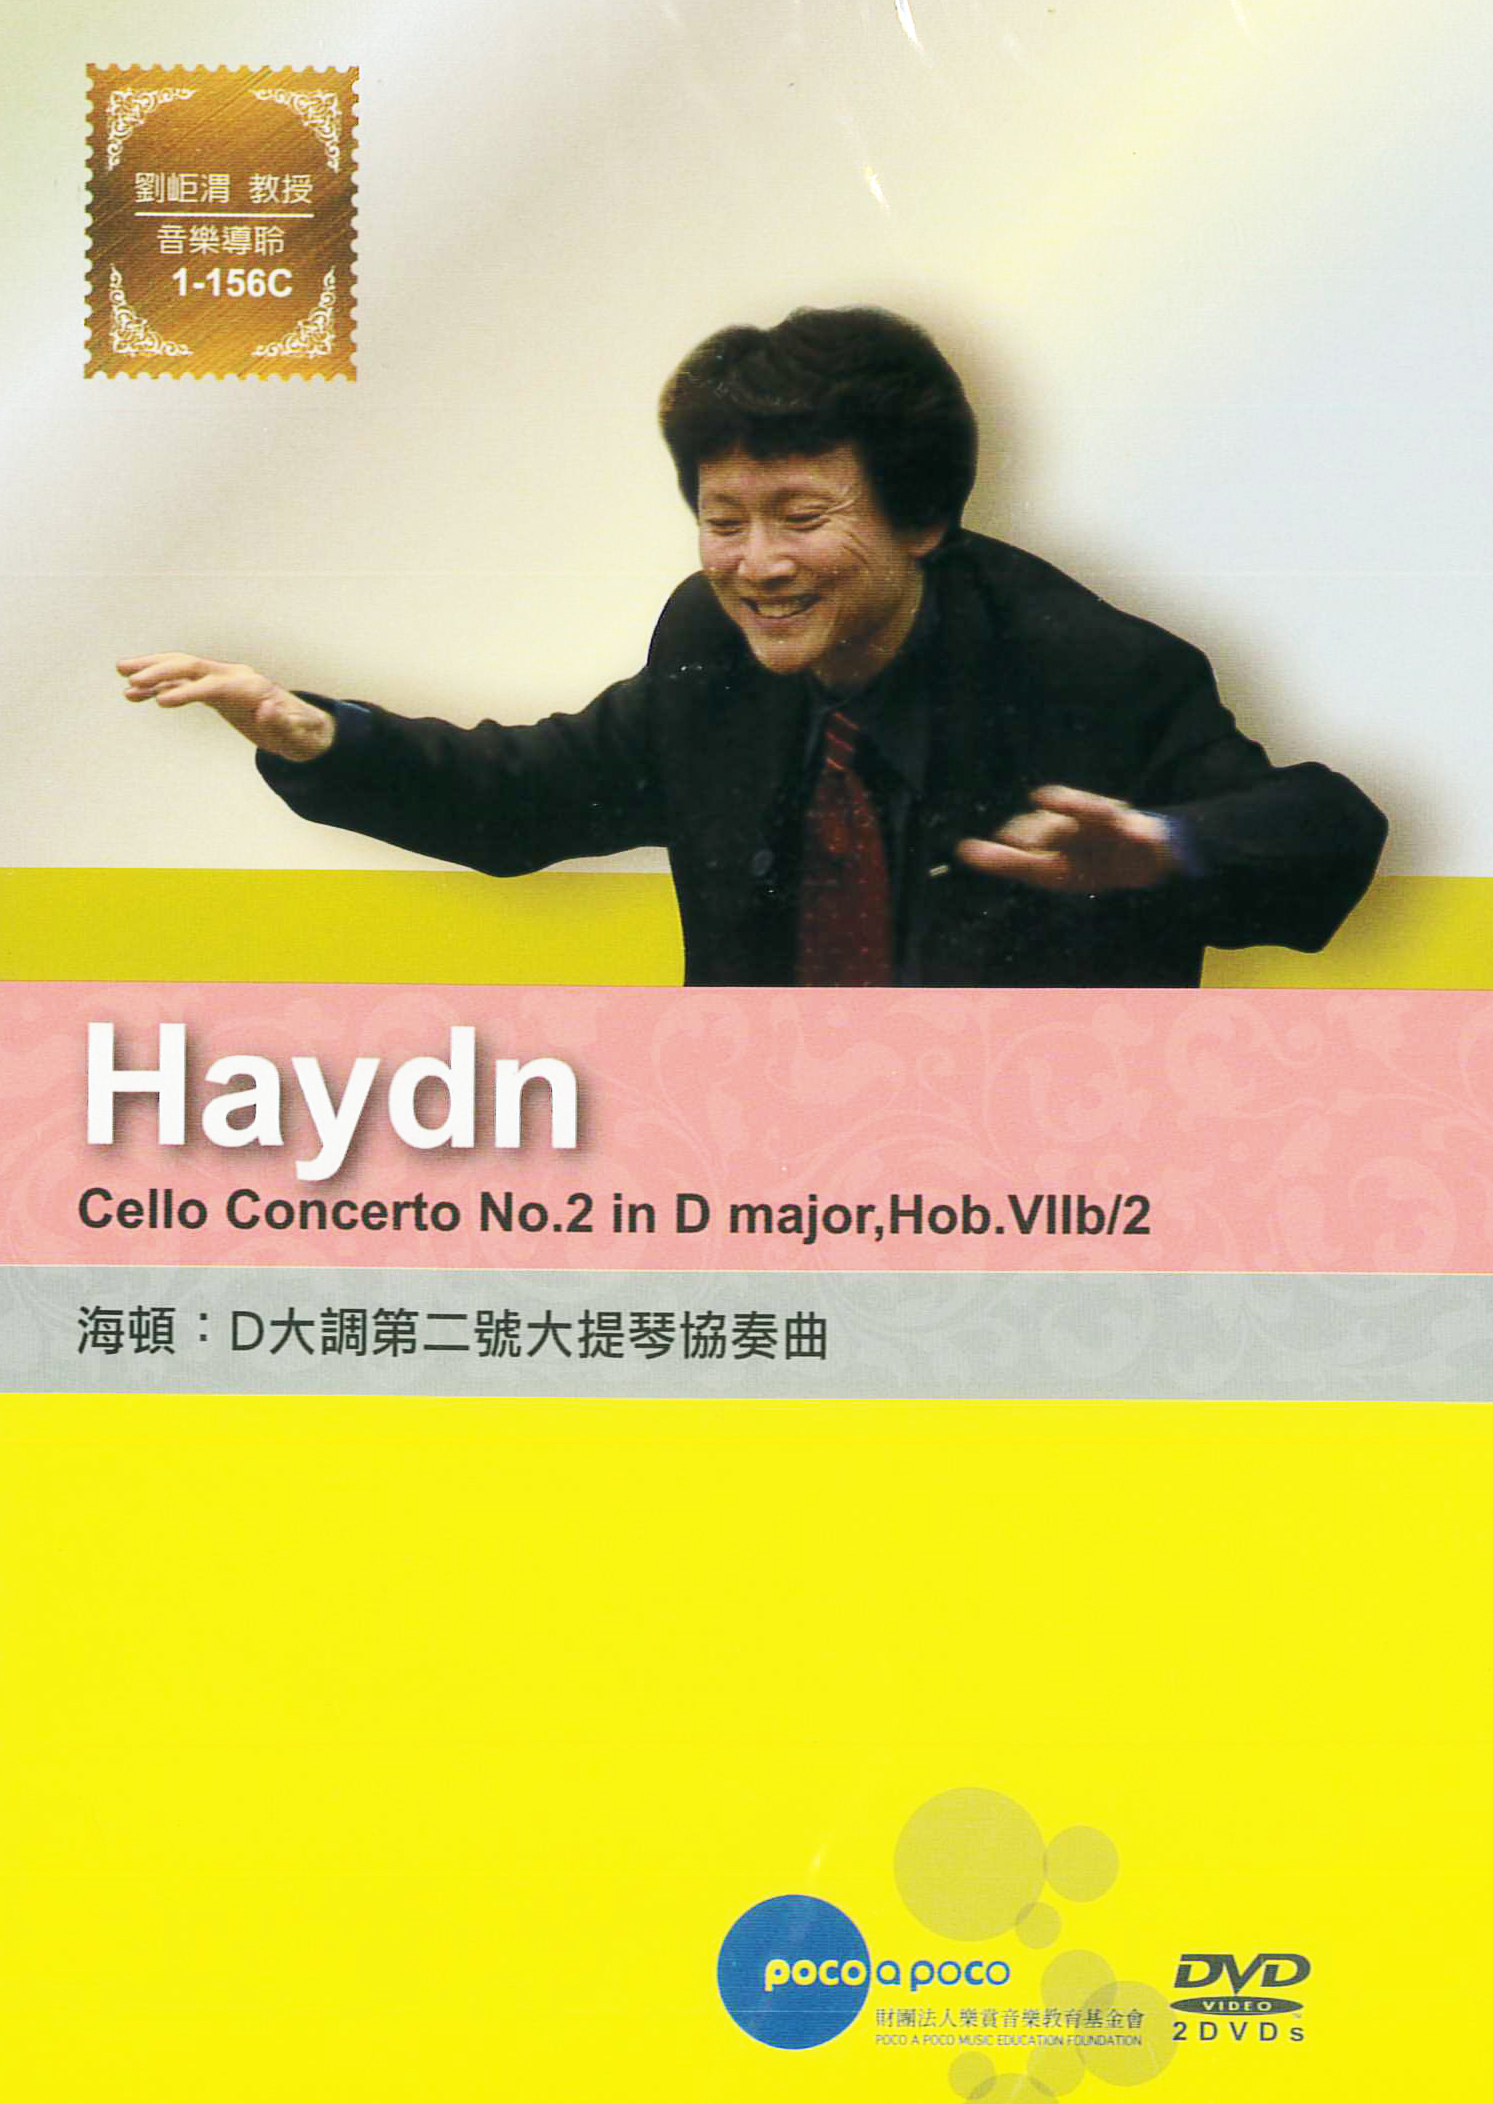 海頓:D大調第二號大提琴協奏曲 : Cello Concerto No.2 in D major, Hob.Vllb/2